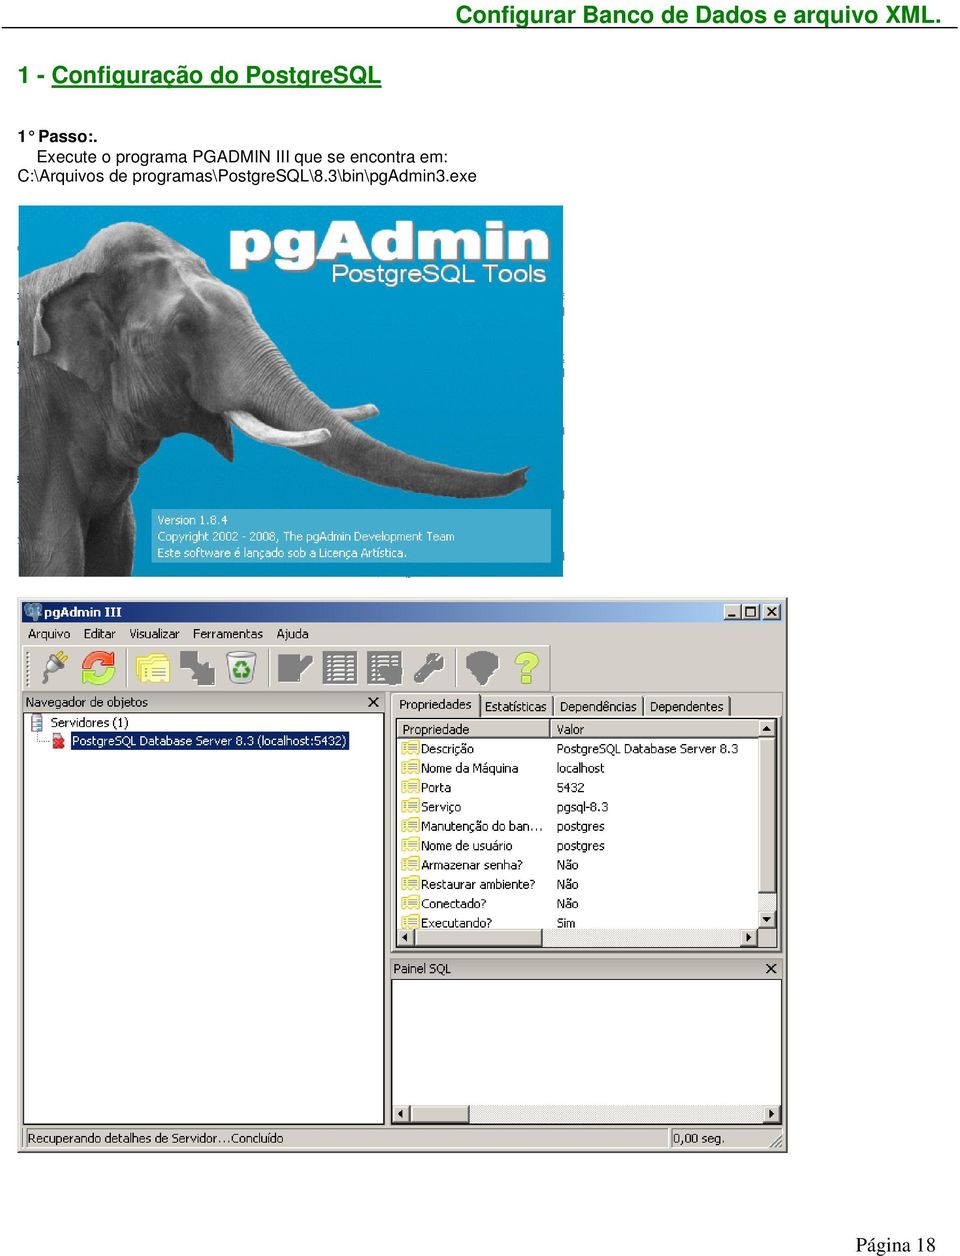 Execute o programa PGADMIN III que se encontra